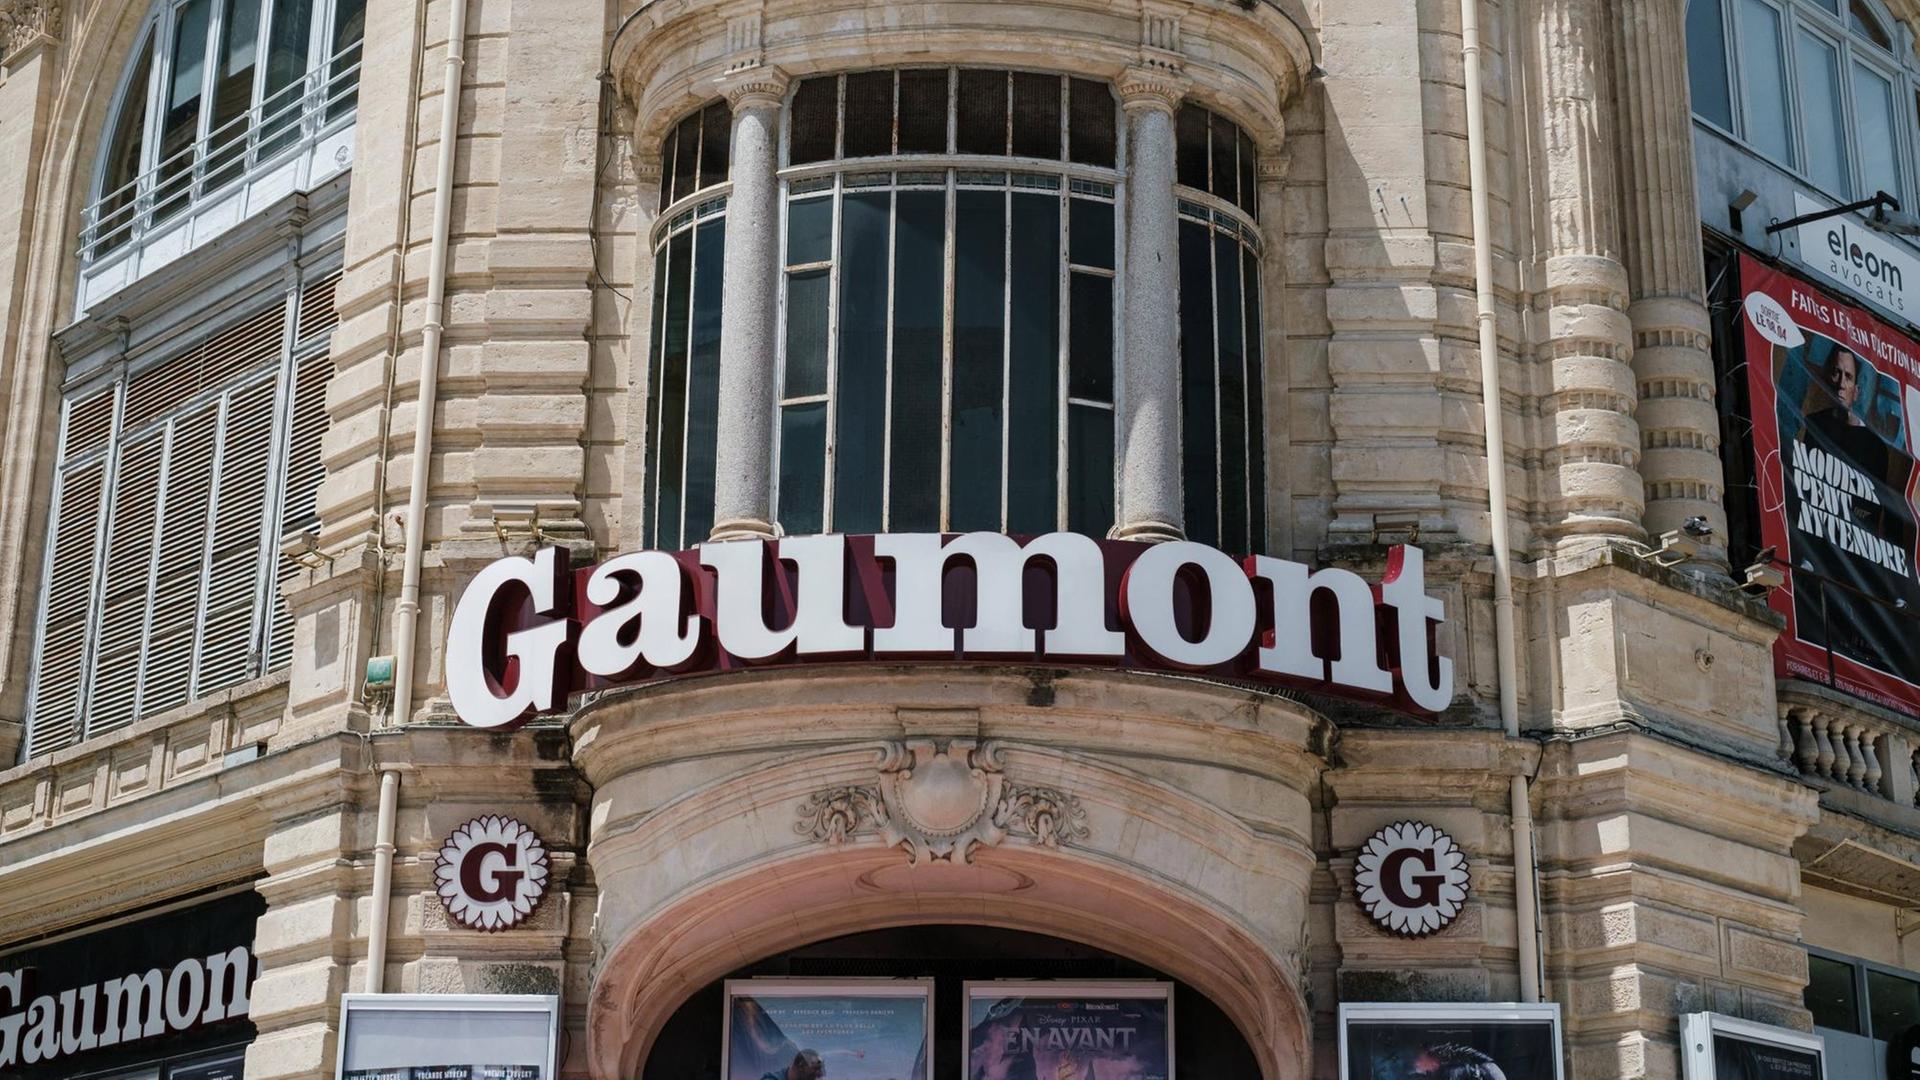 Die Front des Kinogebäudes Gaumont in Montpellier, Frankreich. In großer Leuchtschrift ist der Name des Kinos "Gaumont" zu lesen. FRANCE - CINEMA - FRONT OF GAUMONT CINEMA Facade of a Gaumont cinema. France, June 16, 2020. MONTPELLIER PROVENCE ALPES COTE D AZUR FRANCE PUBLICATIONxINxGERxSUIxAUTxONLY Copyright: xJean-BaptistexPrematx HLJBPREMAT1164641